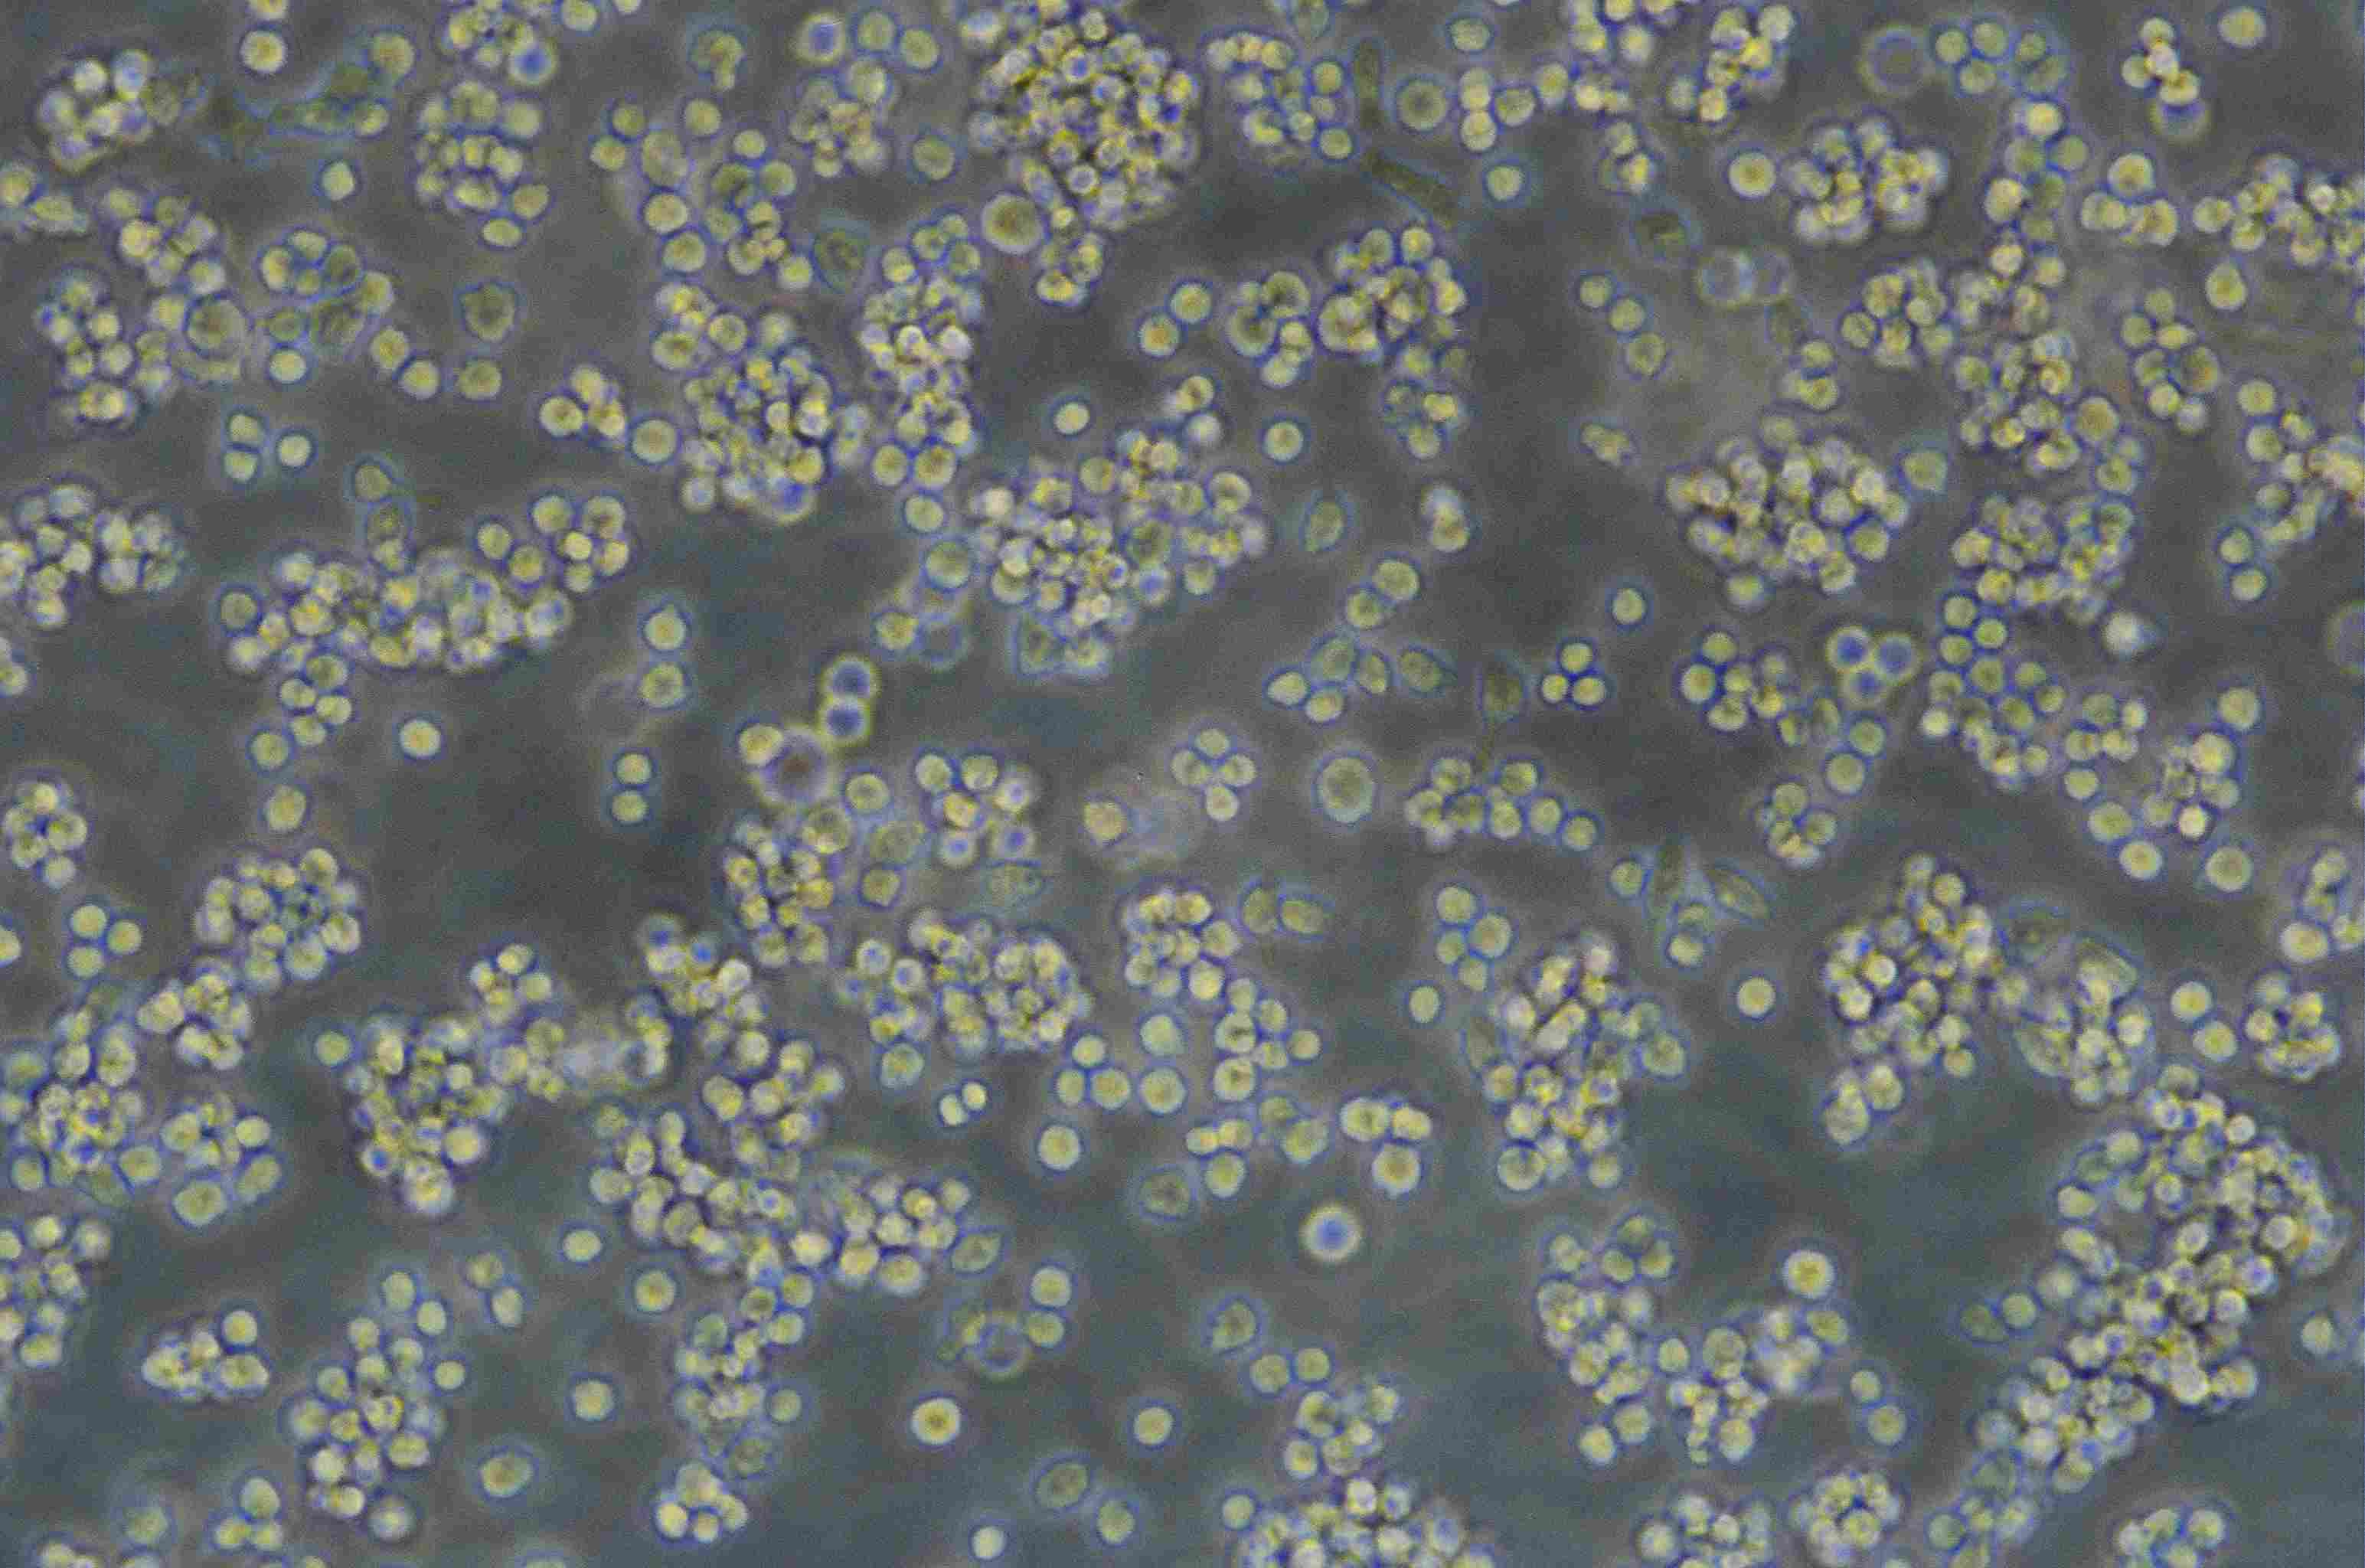 MyLa 2059 人皮肤T淋巴细胞瘤细胞系